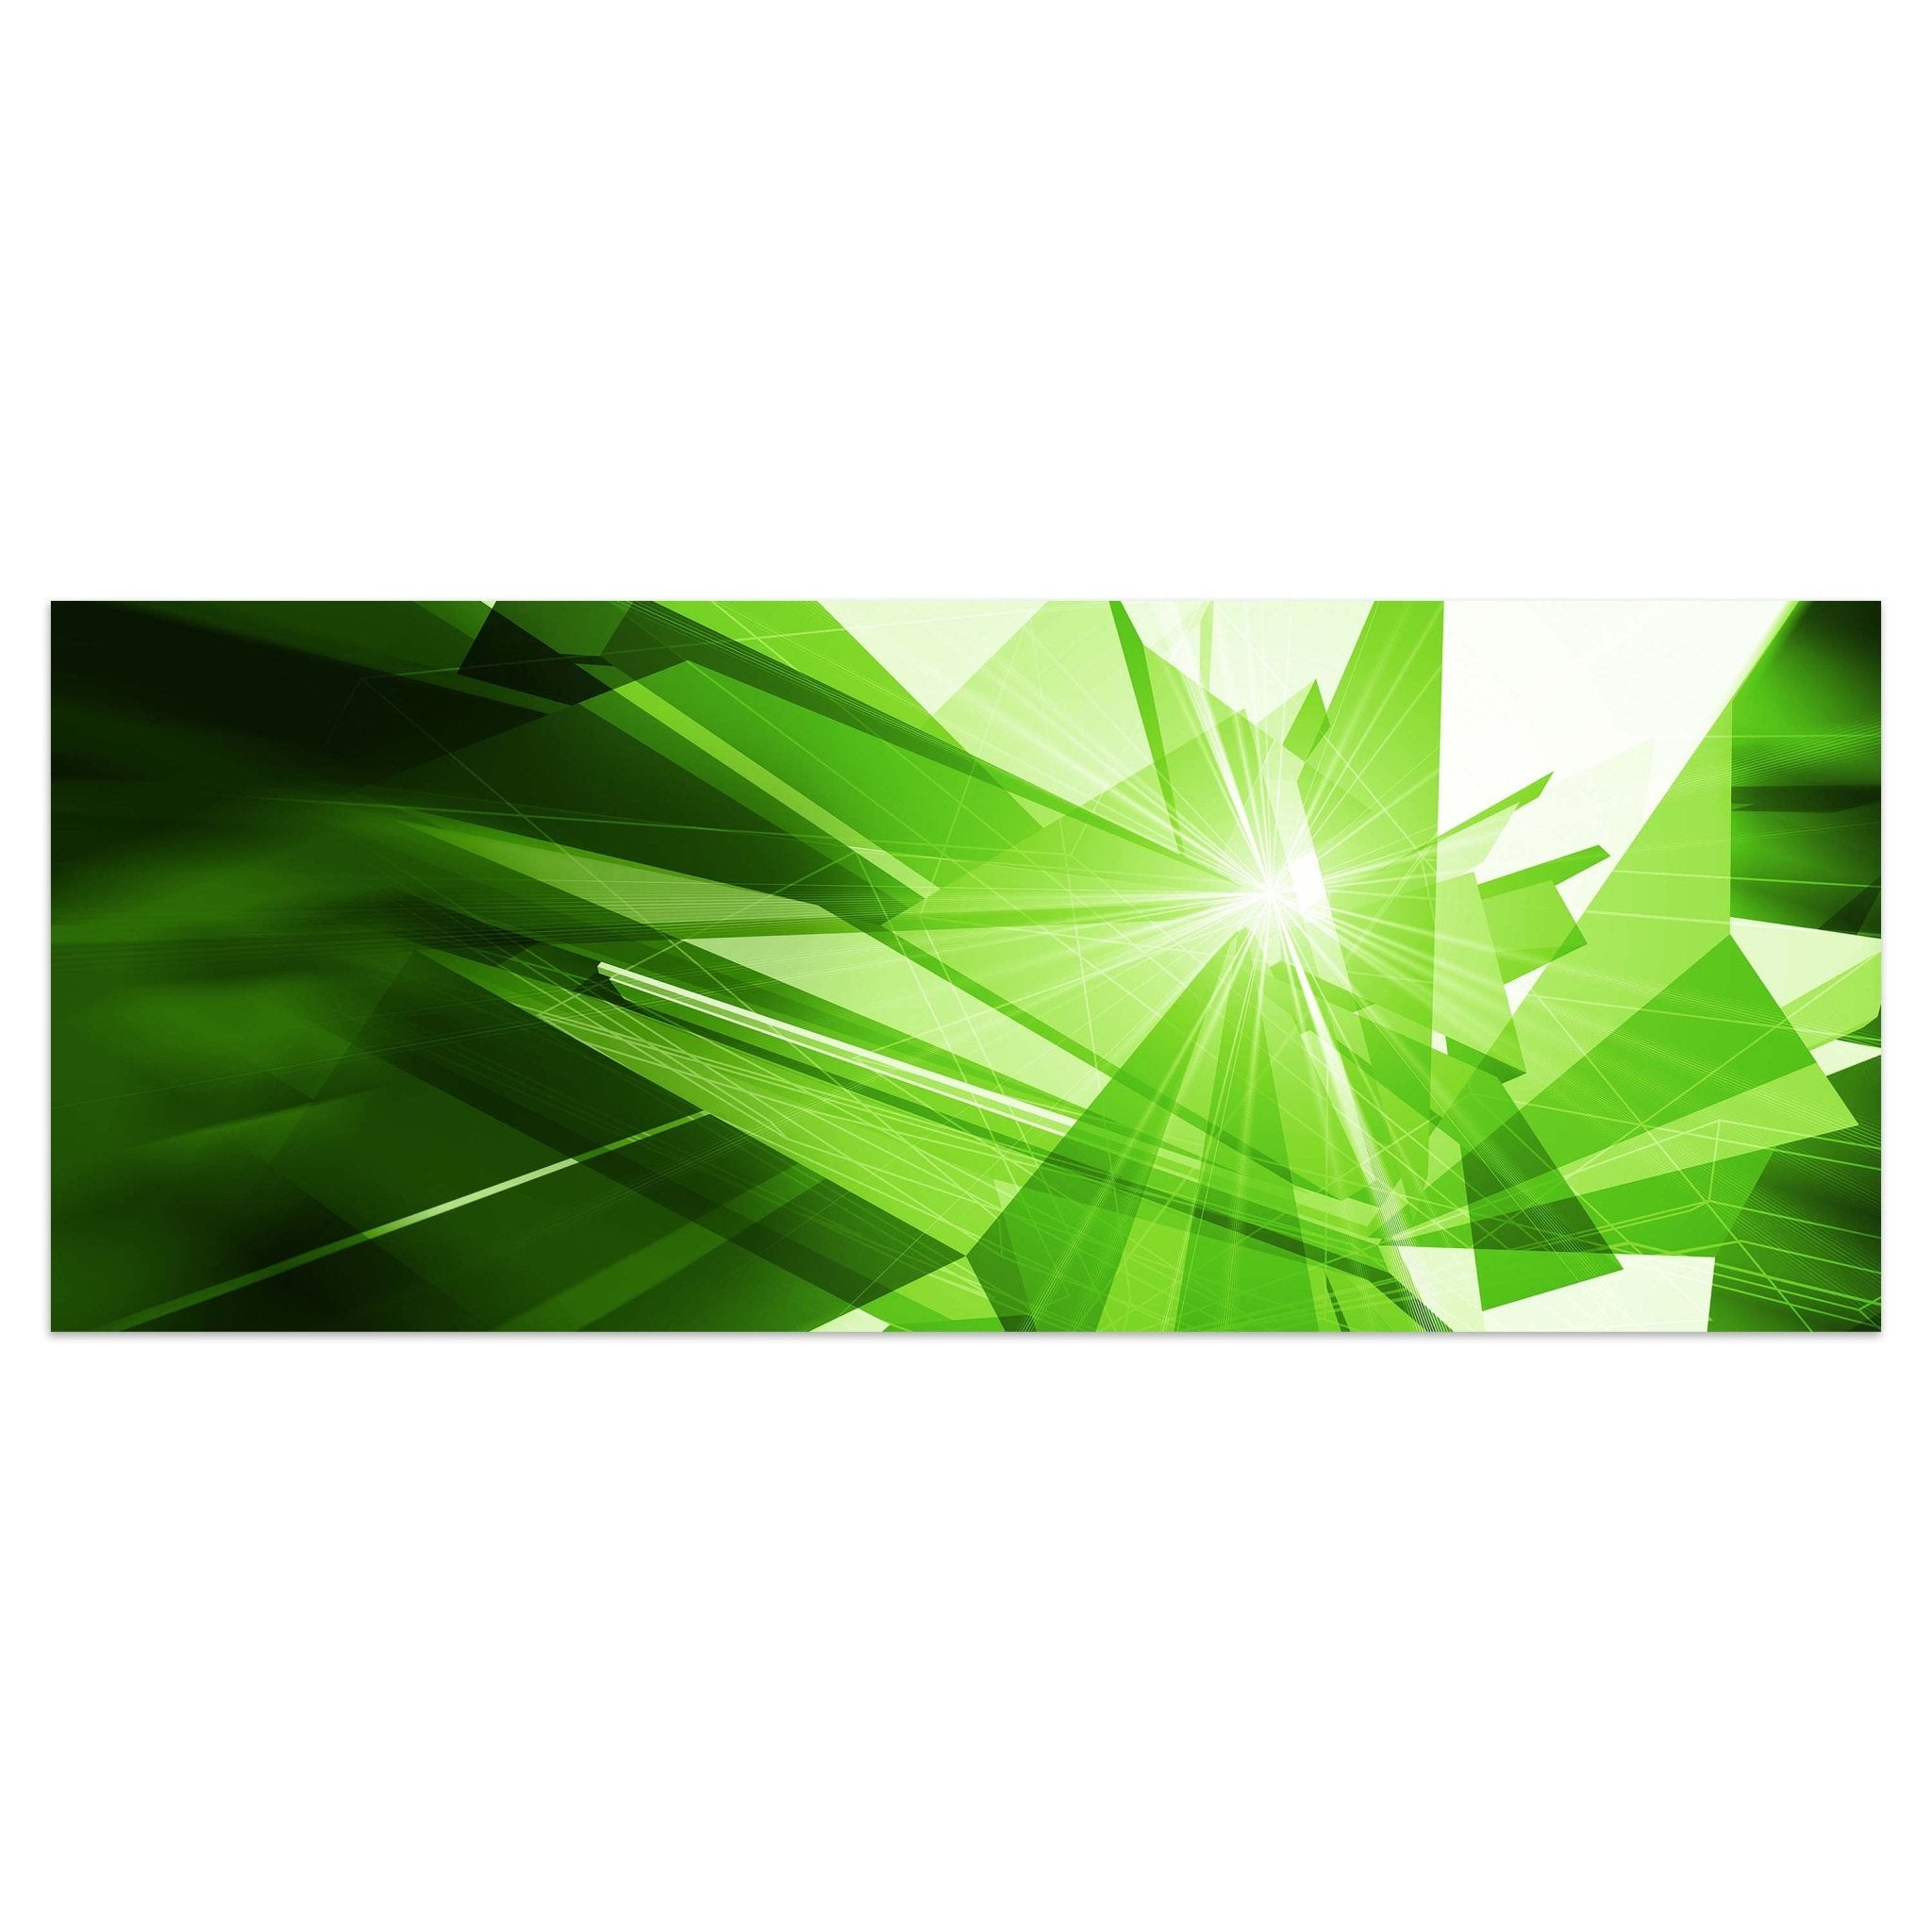 Leinwandbild Grüne Dynamik M0425 kaufen - Bild 1